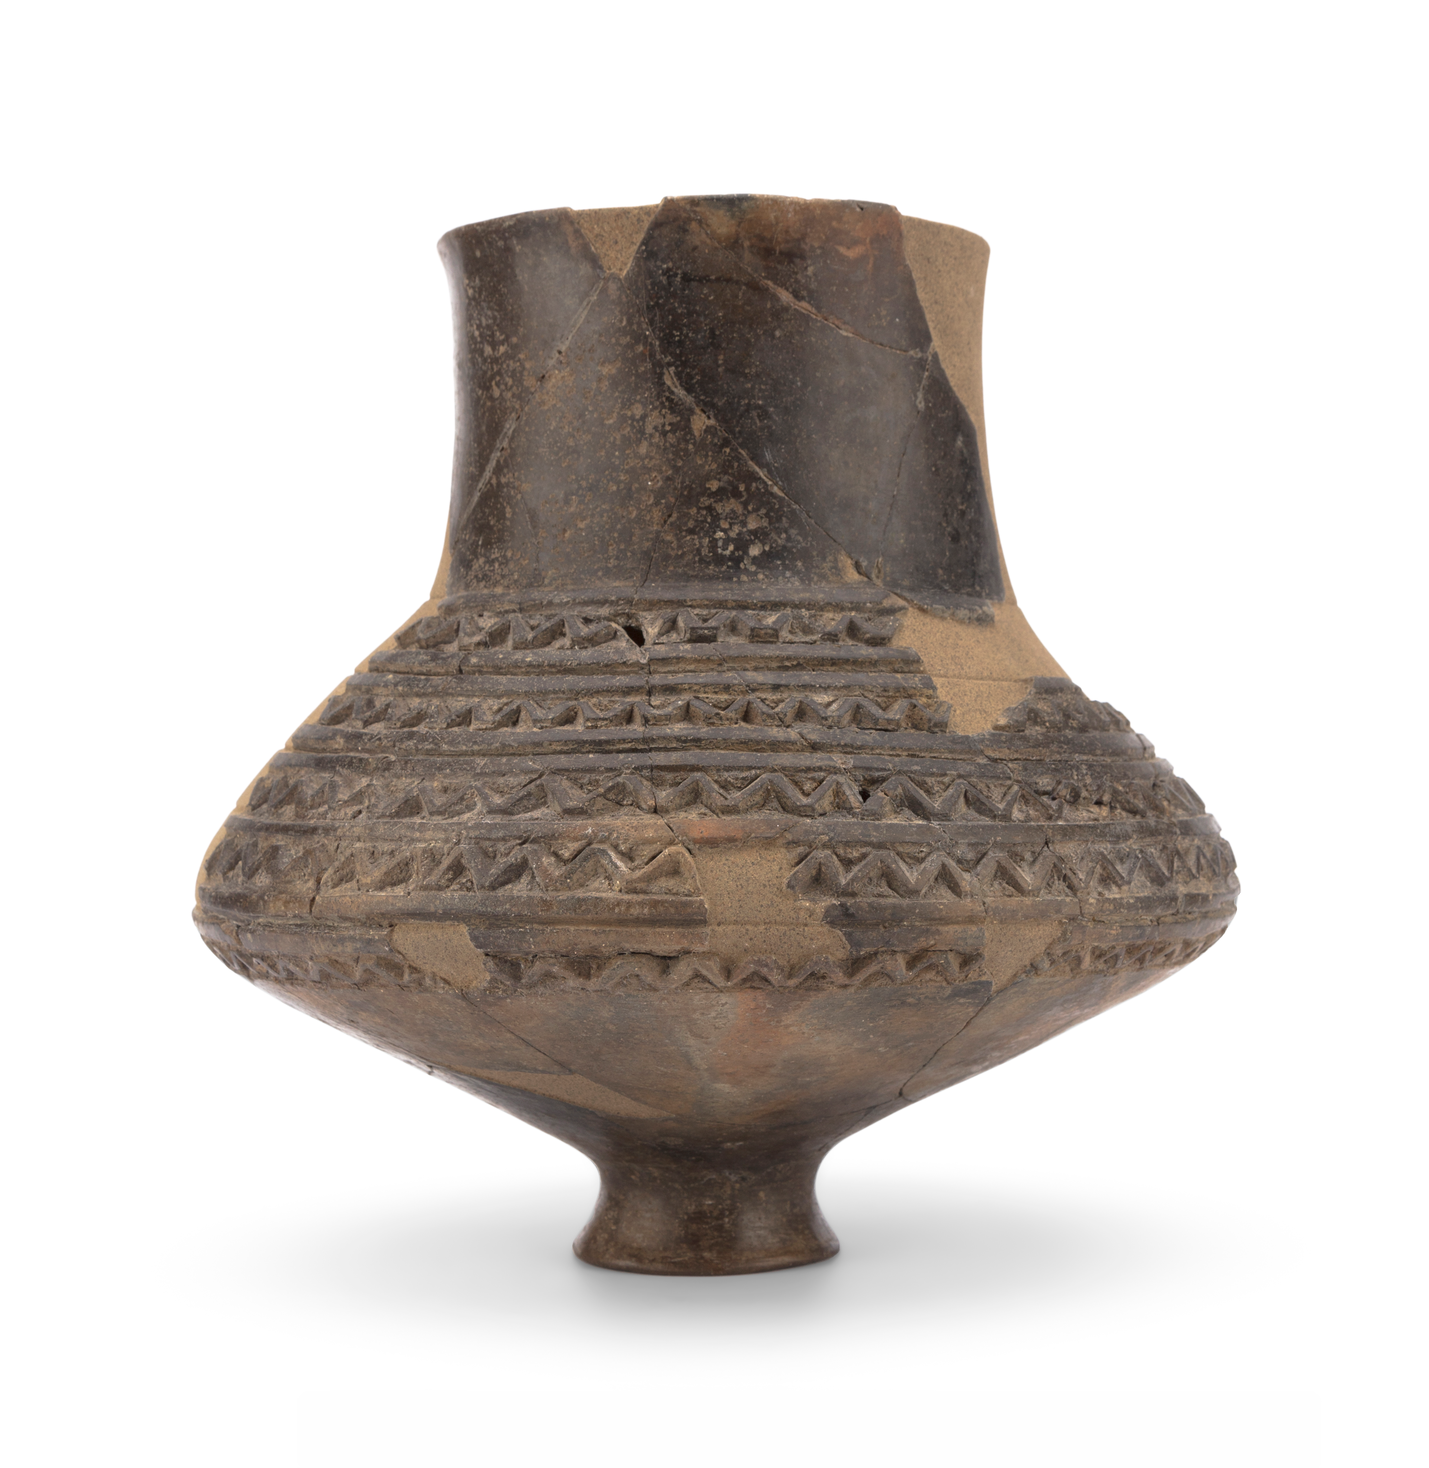 Archeo_Montmorot céramique age du fer © David Vuillermoz Musées de Lons-le-Saunier